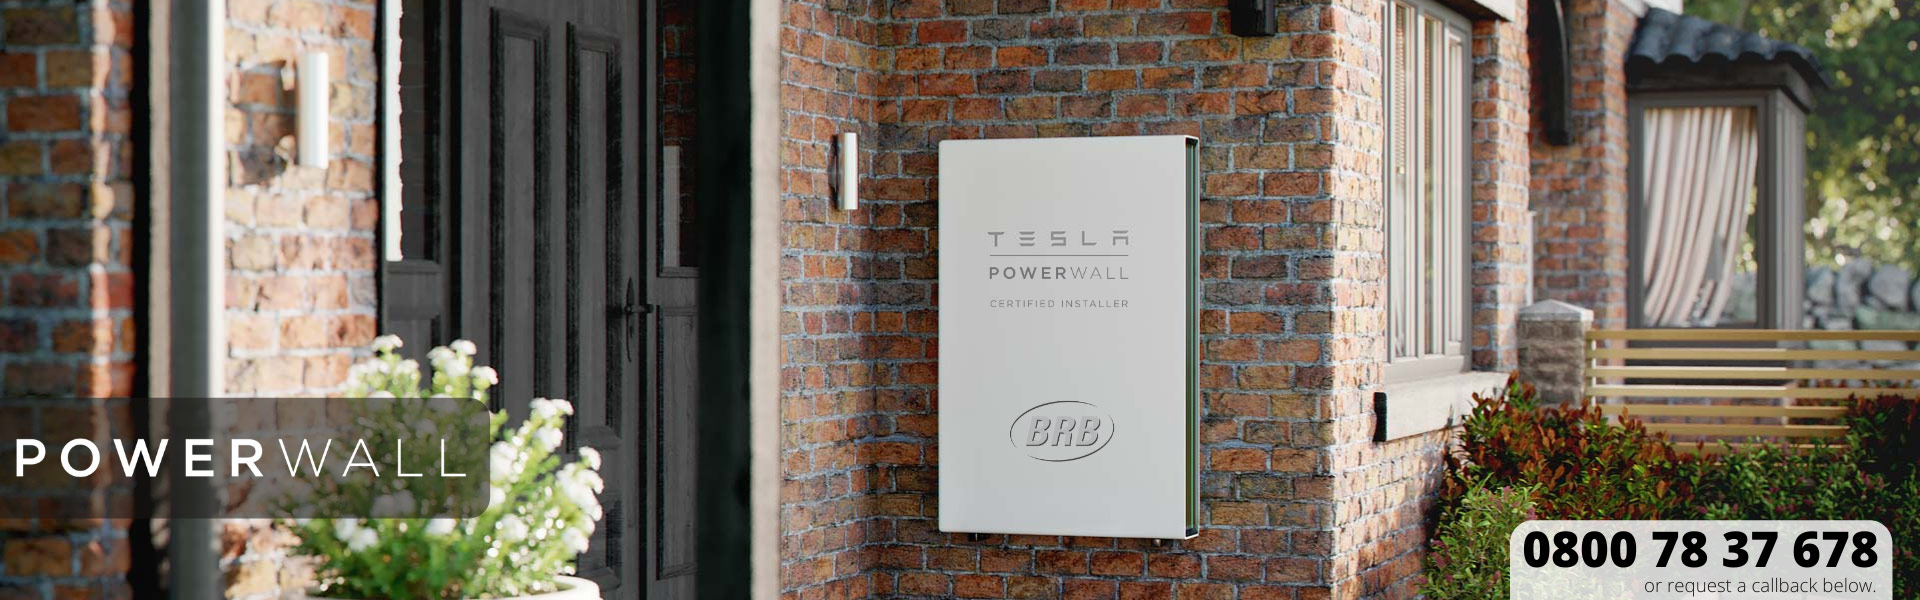 Tesla Powerwall Scotland Glasgow